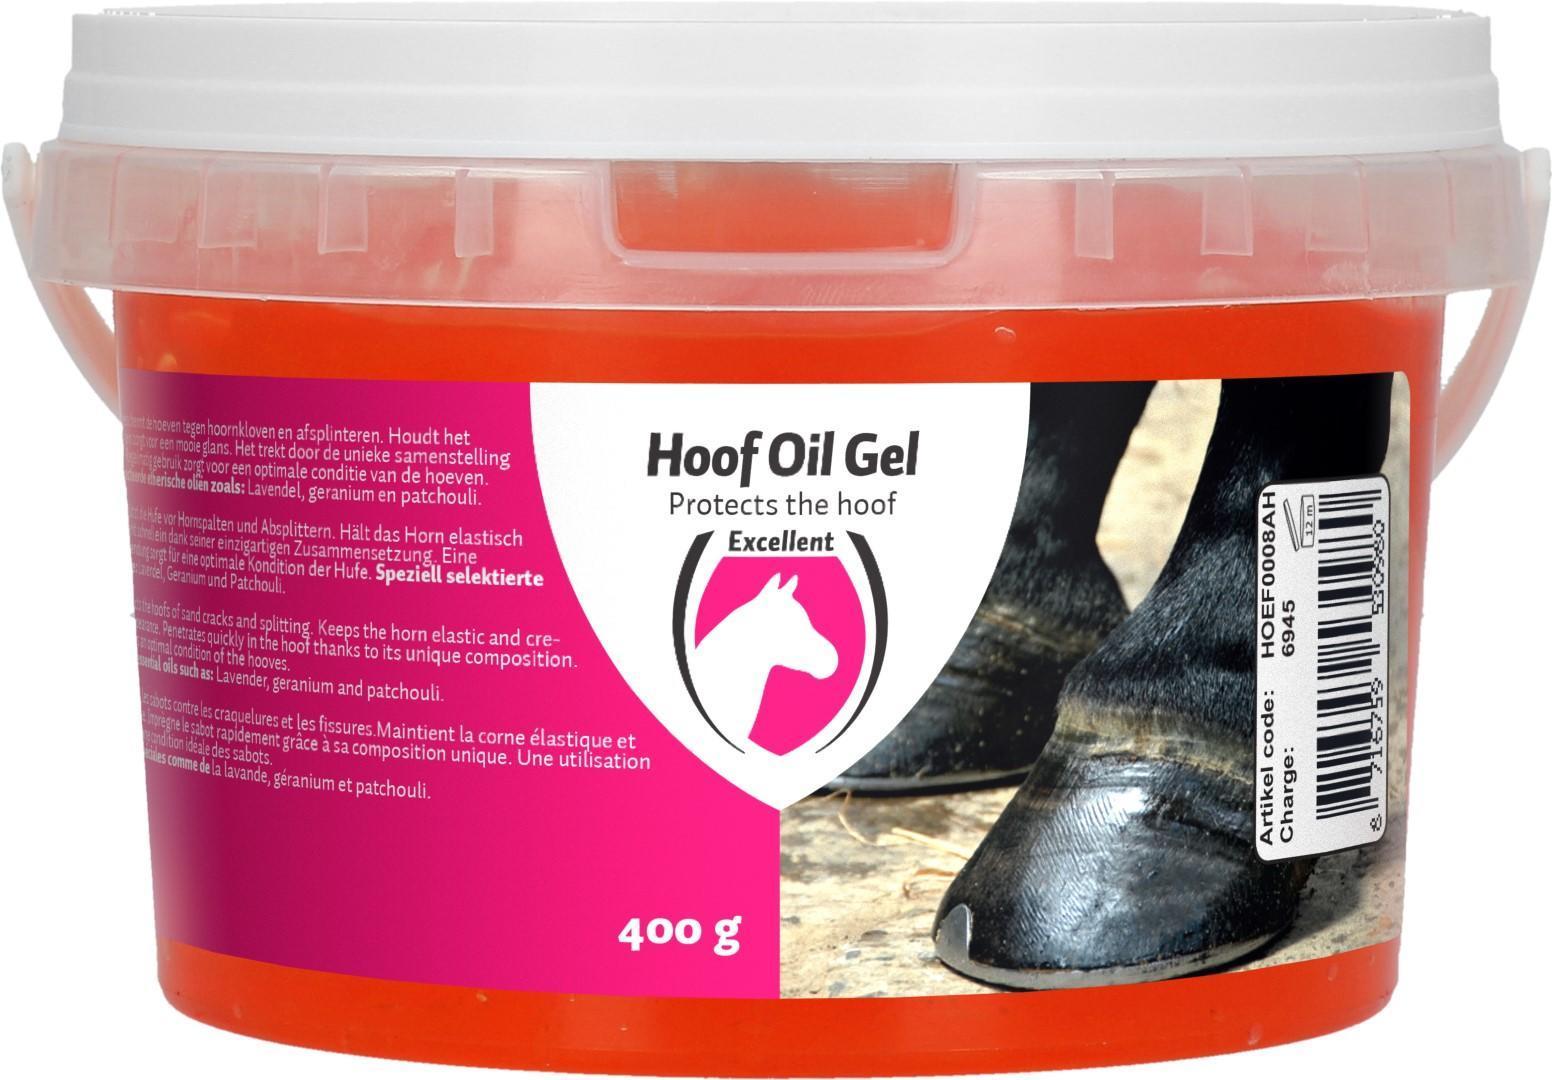 Hoof oil gel, horse care, hoof care